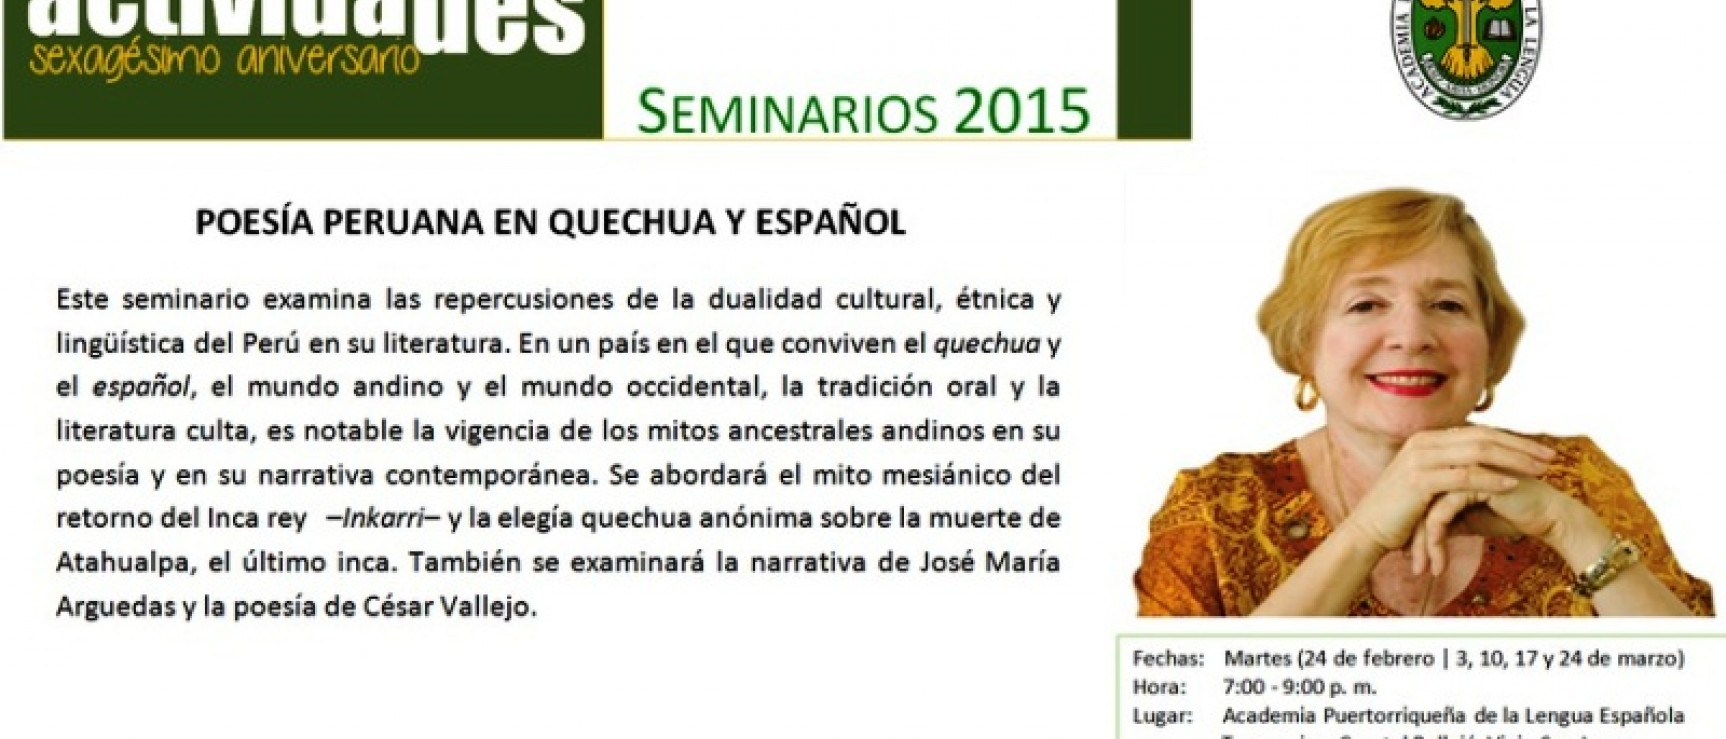 La Academia Puertorriqueña de la Lengua Española organiza un seminario sobre literatura peruana. 